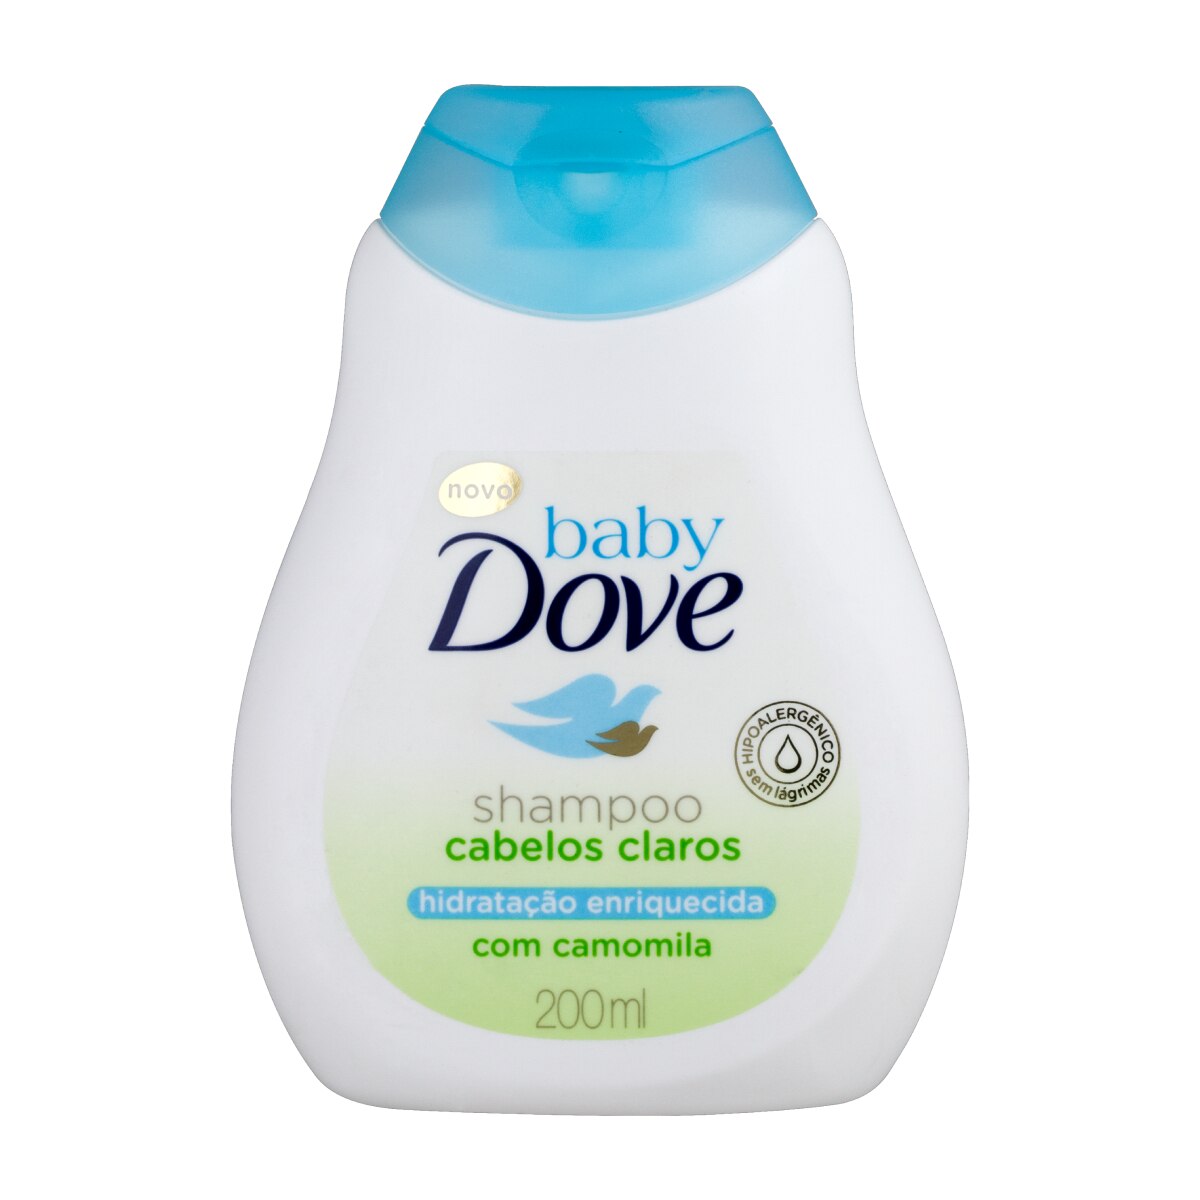 Shampoo Baby Dove Hidratacao Enriquecida Cabelos Claros 200ml